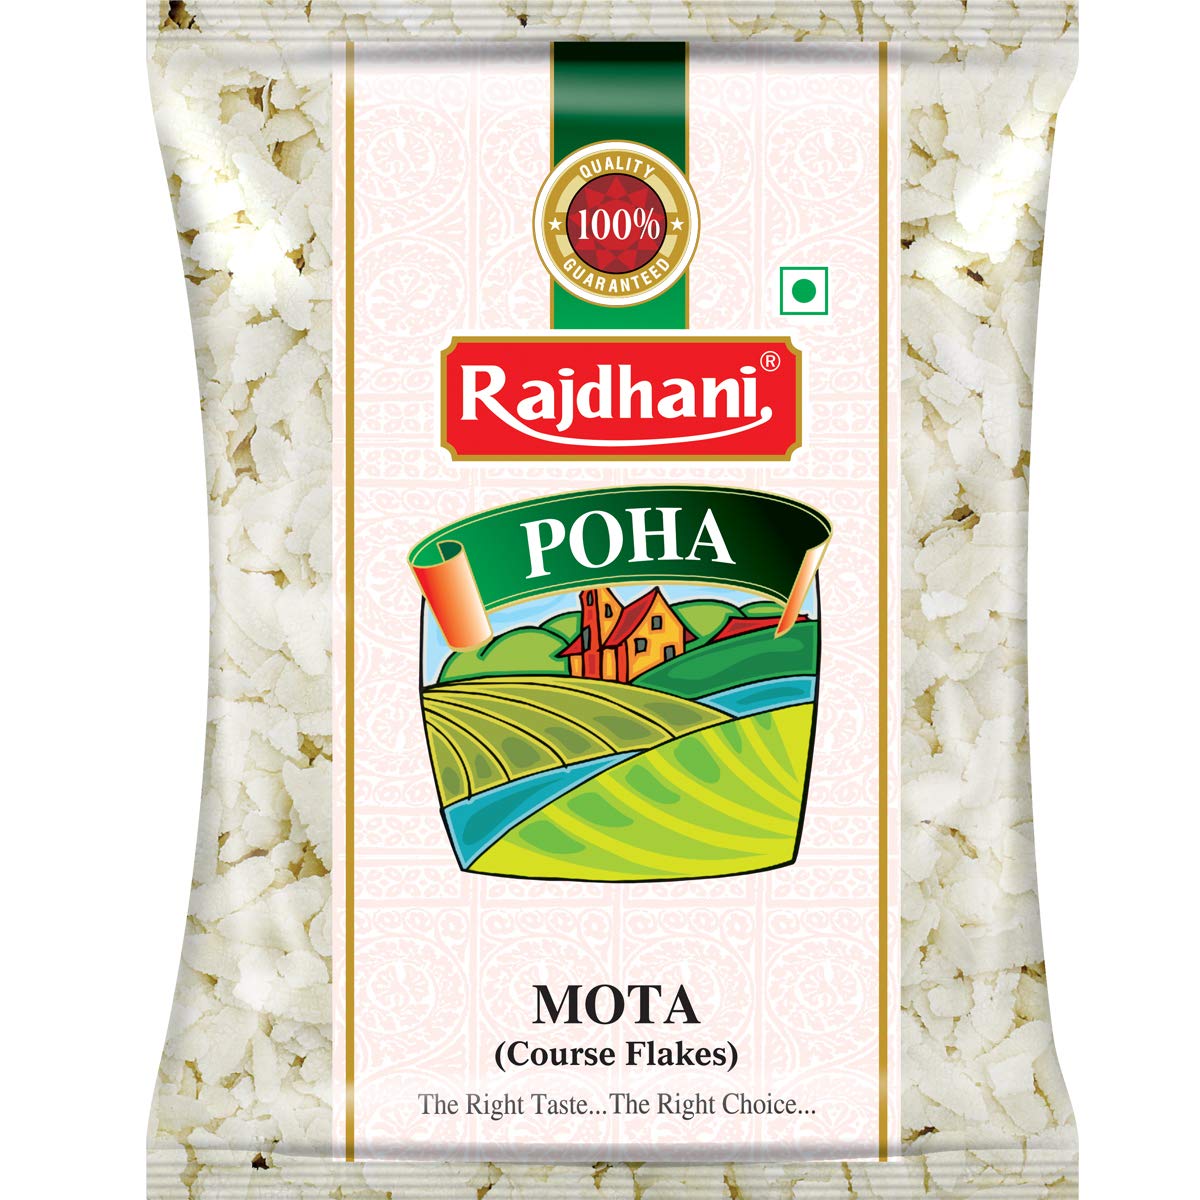 Poha Mota Rajdhani( ข้าวเม่าอินเดีย ) 500gm